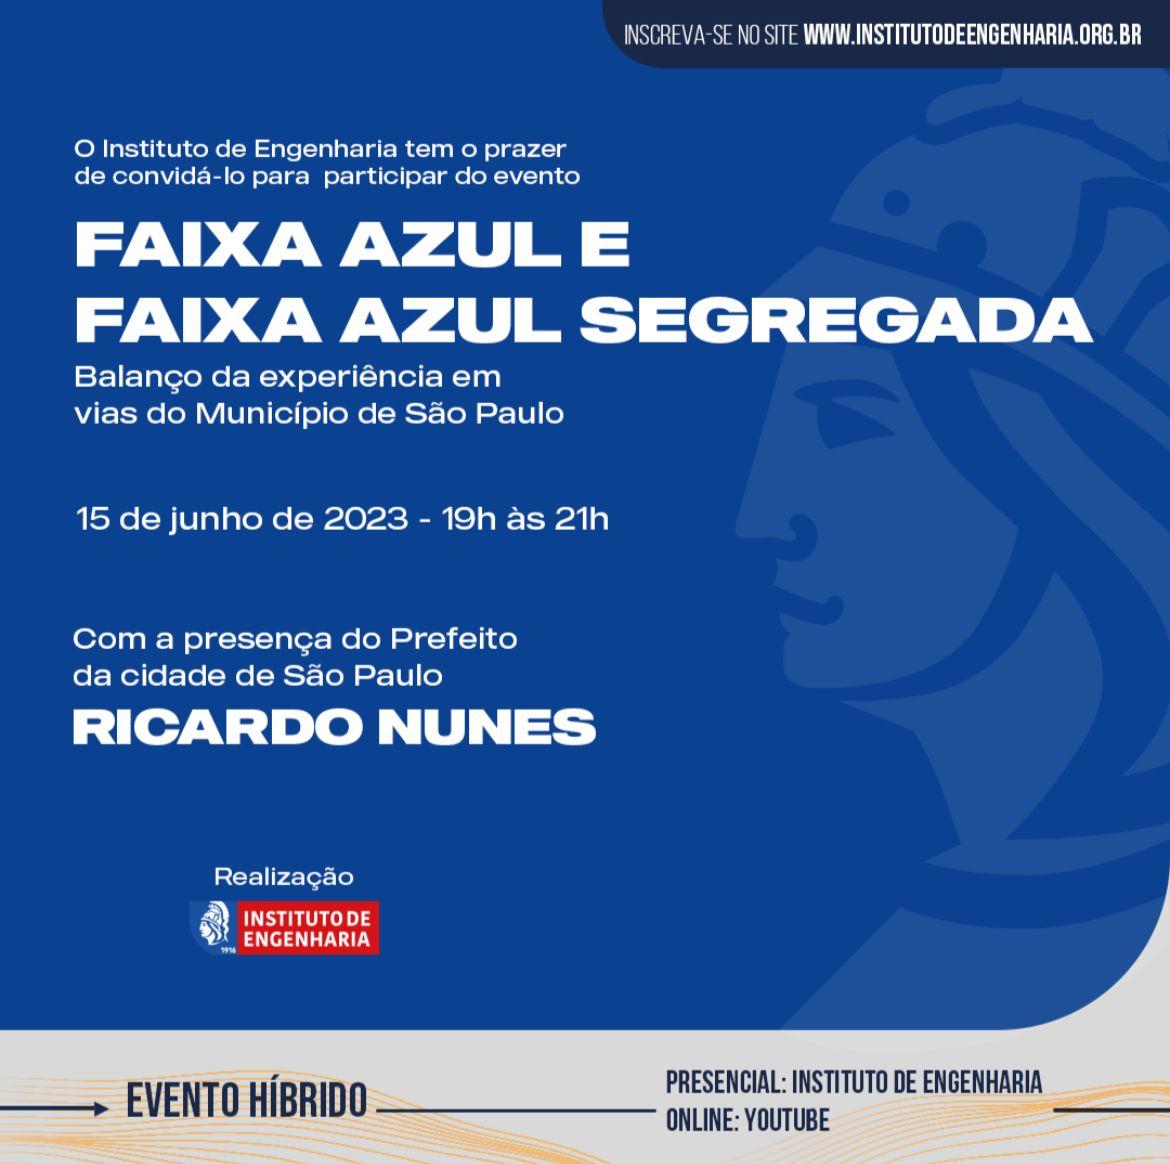 PALESTRA: Faixa Azul e Faixa Azul Segregada - Balanço da experiência em vias do município de São Paulo - 15 de junho - 19h